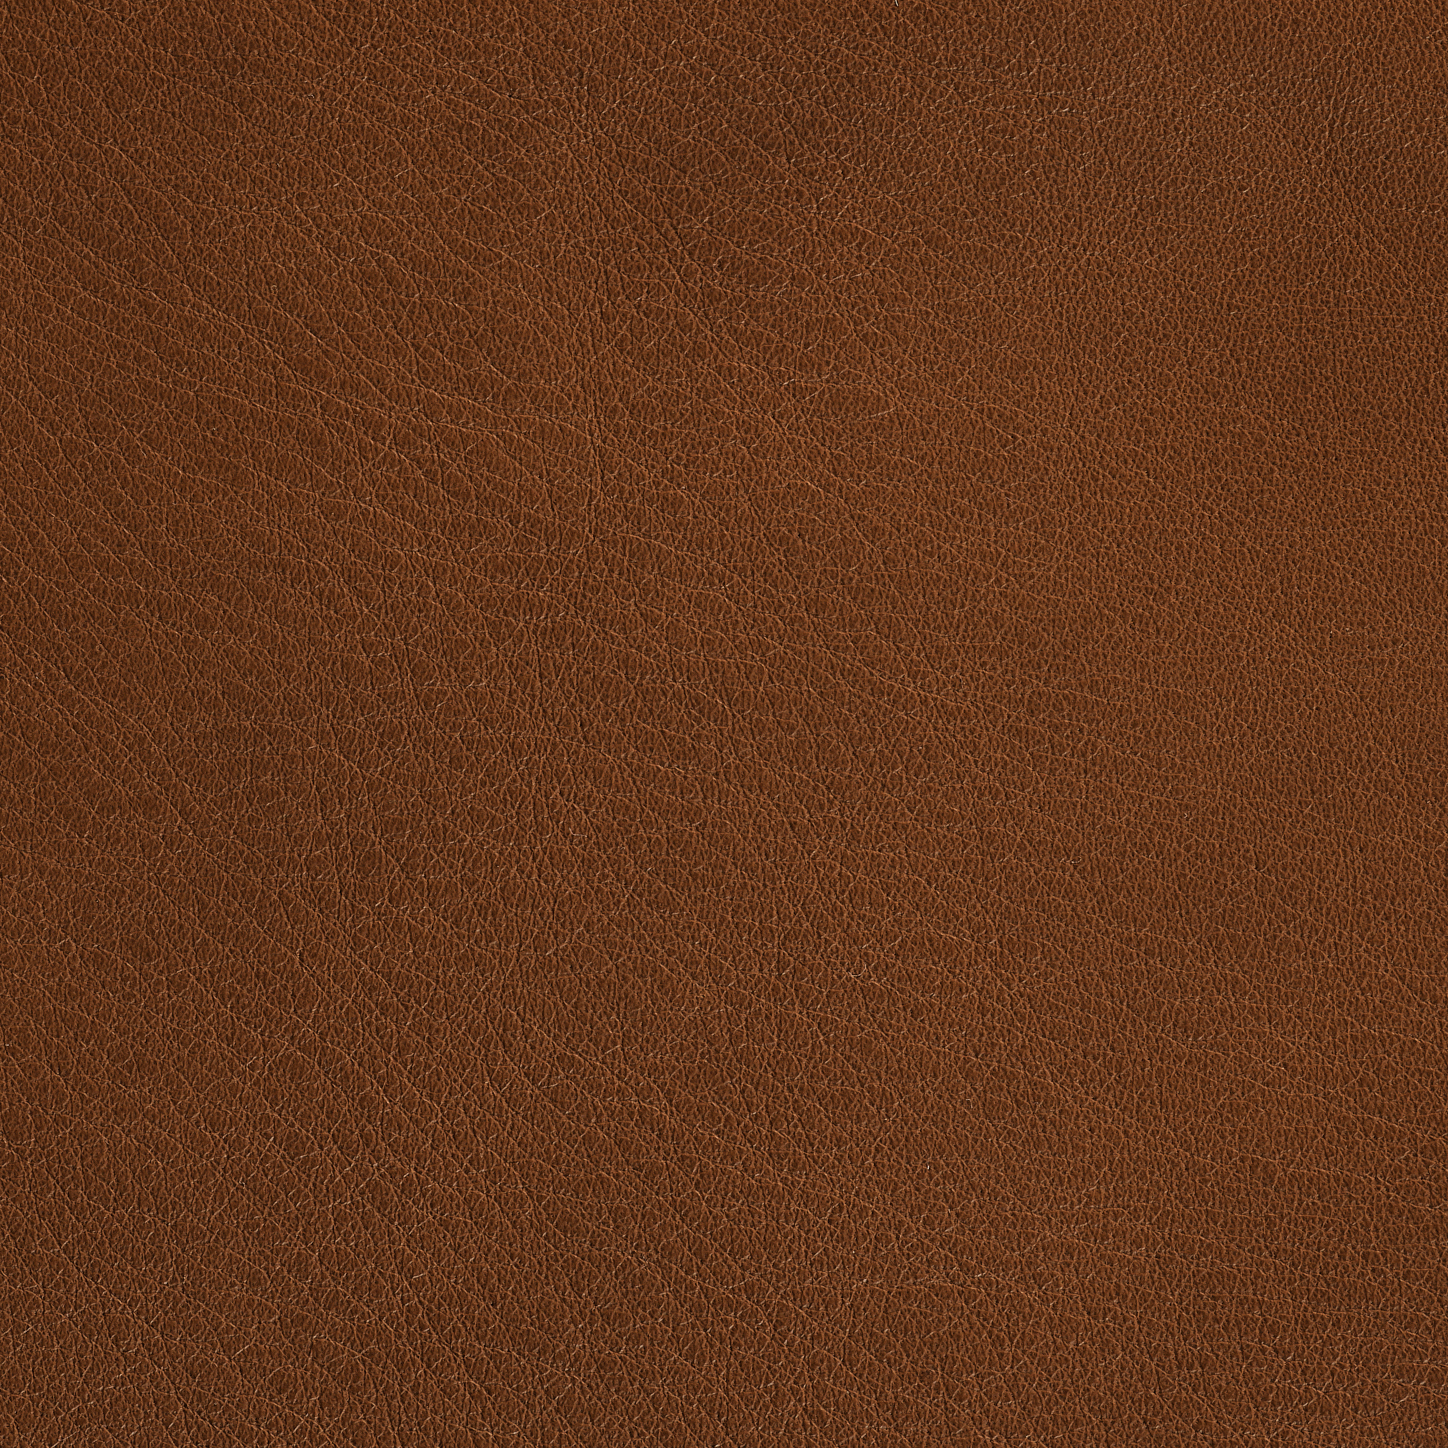 Cognac Parma Leather